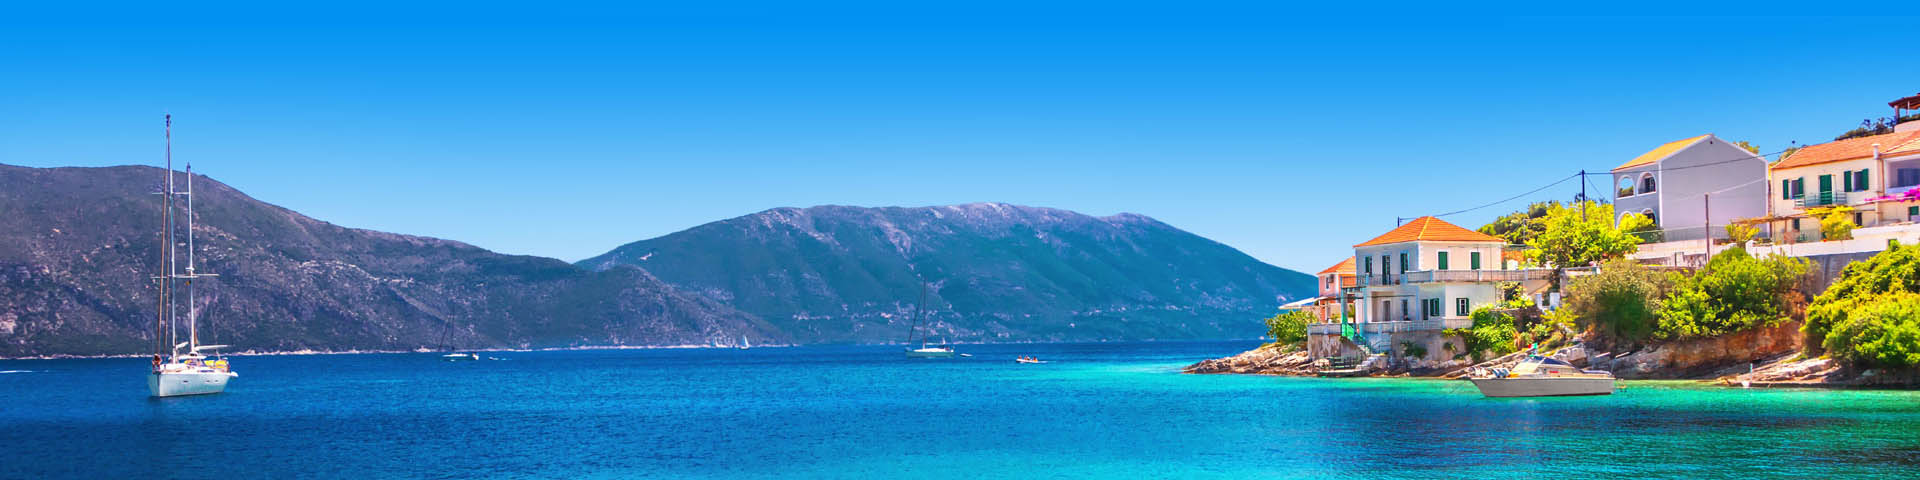 Het helderblauwe zeewater met bergen op de achtergrond tijdens de meivakantie Kreta